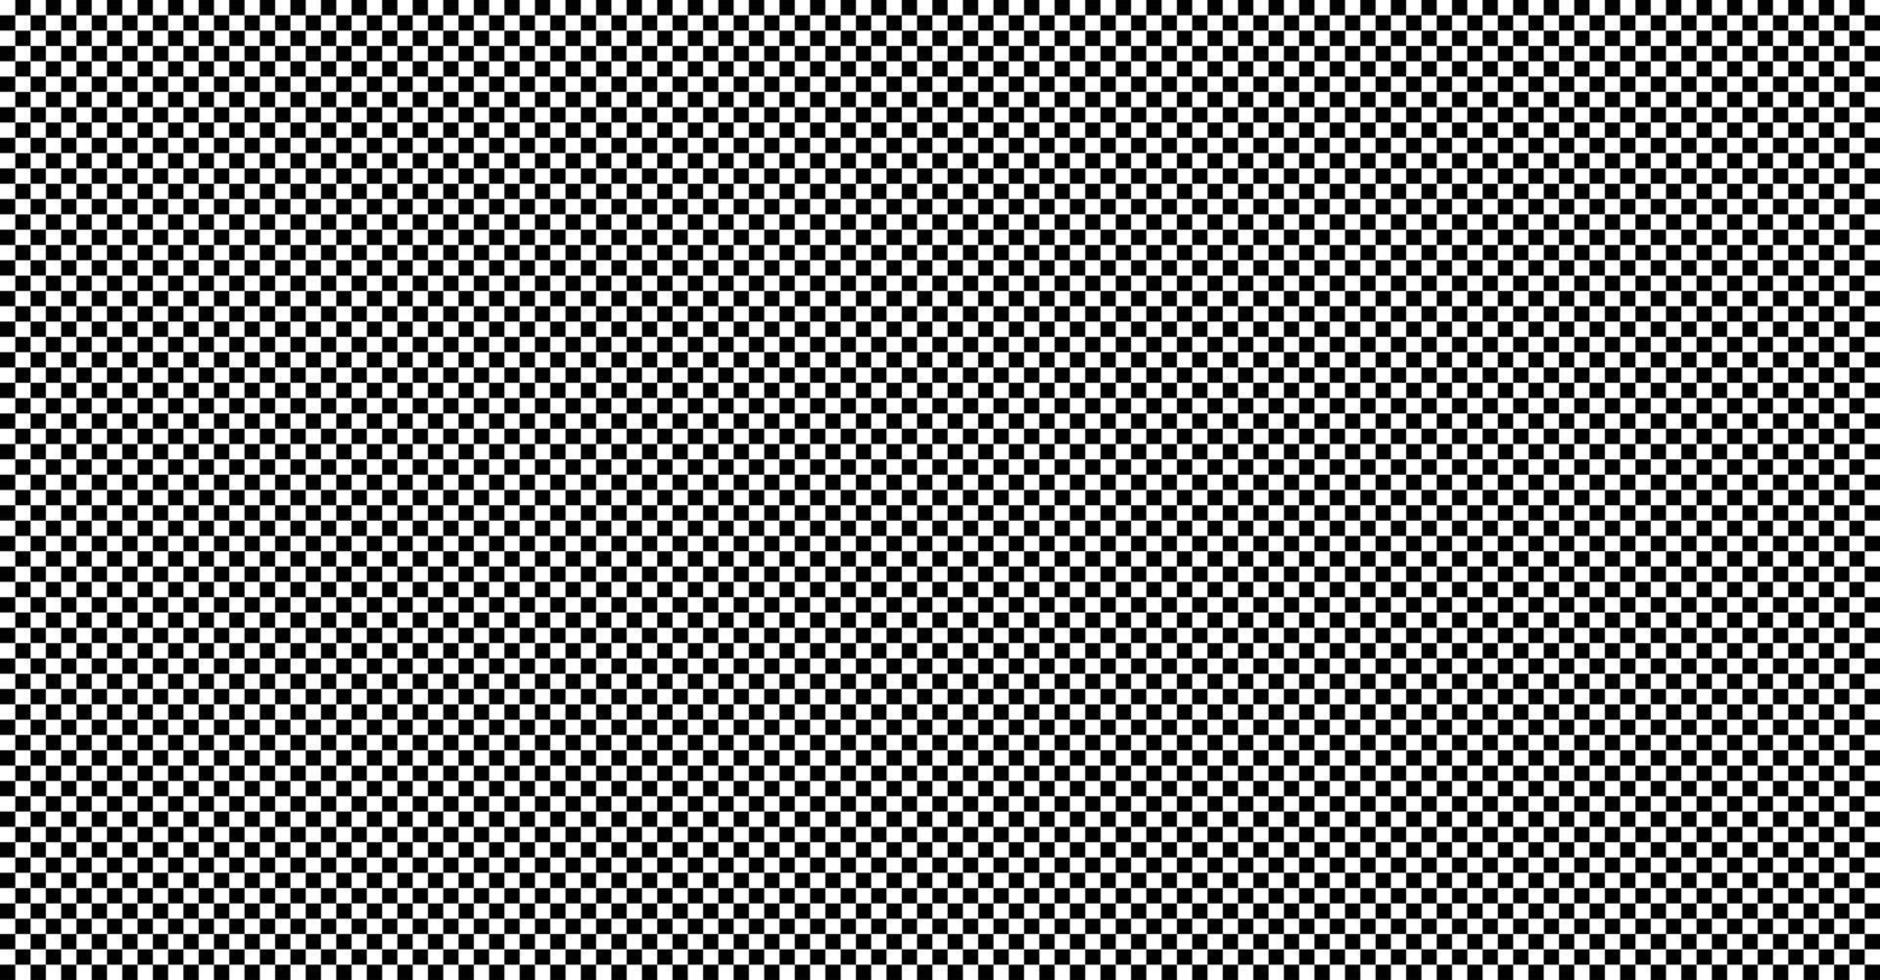 patrón geométrico blanco abstracto con cuadrados. Diseño de elemento empresarial para textura de fondo, carteles, tarjetas, fondos de pantalla, telones de fondo, paneles - ilustración vectorial vector